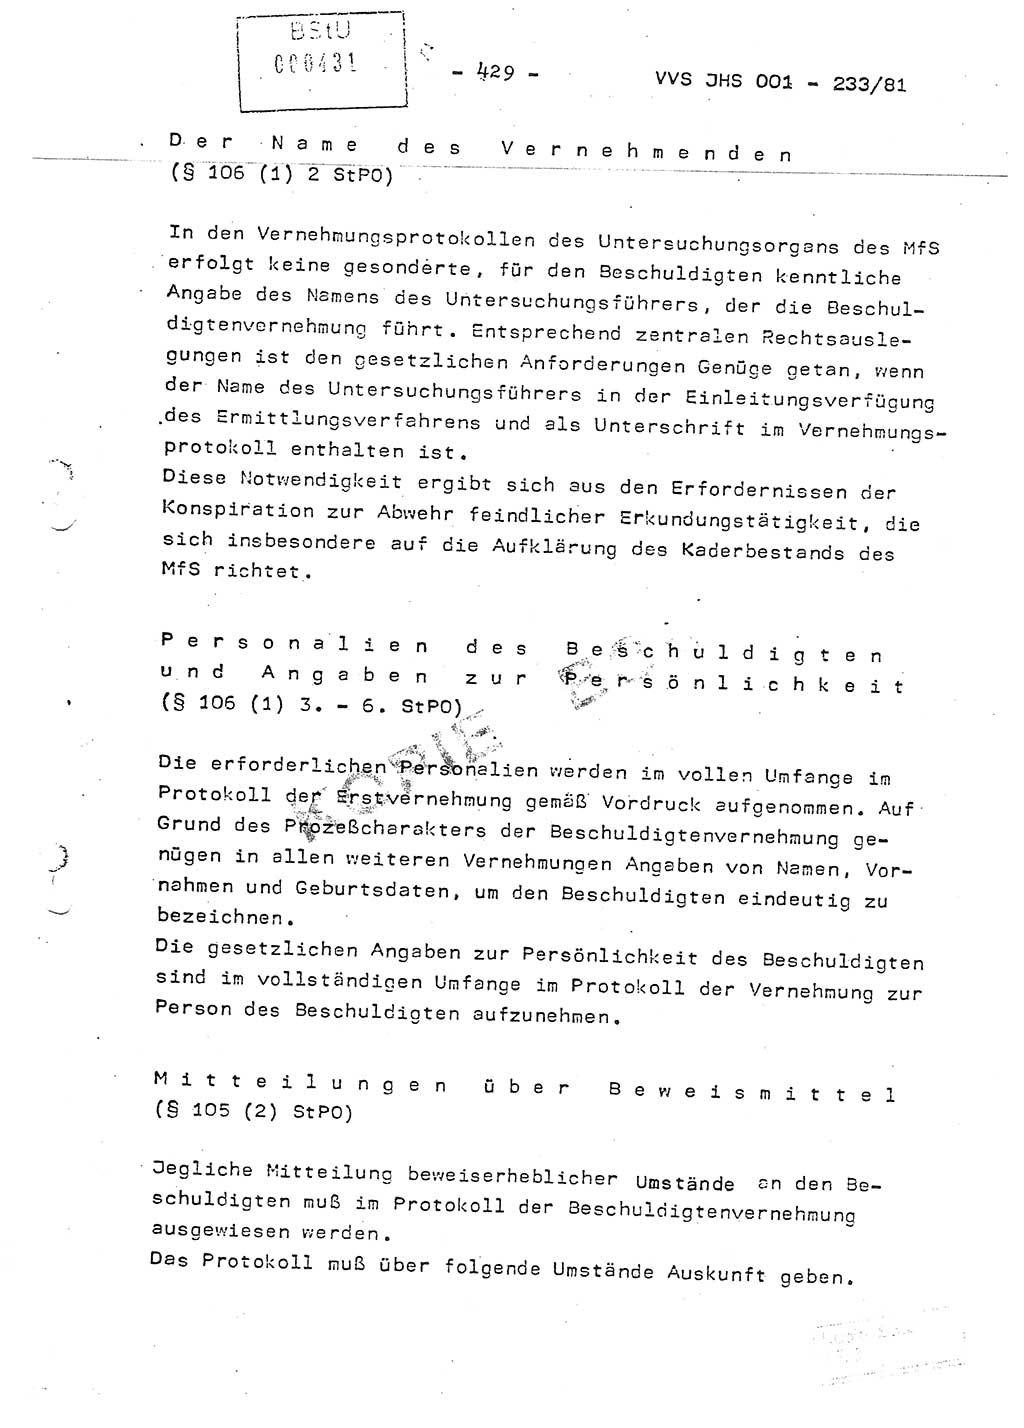 Dissertation Oberstleutnant Horst Zank (JHS), Oberstleutnant Dr. Karl-Heinz Knoblauch (JHS), Oberstleutnant Gustav-Adolf Kowalewski (HA Ⅸ), Oberstleutnant Wolfgang Plötner (HA Ⅸ), Ministerium für Staatssicherheit (MfS) [Deutsche Demokratische Republik (DDR)], Juristische Hochschule (JHS), Vertrauliche Verschlußsache (VVS) o001-233/81, Potsdam 1981, Blatt 429 (Diss. MfS DDR JHS VVS o001-233/81 1981, Bl. 429)